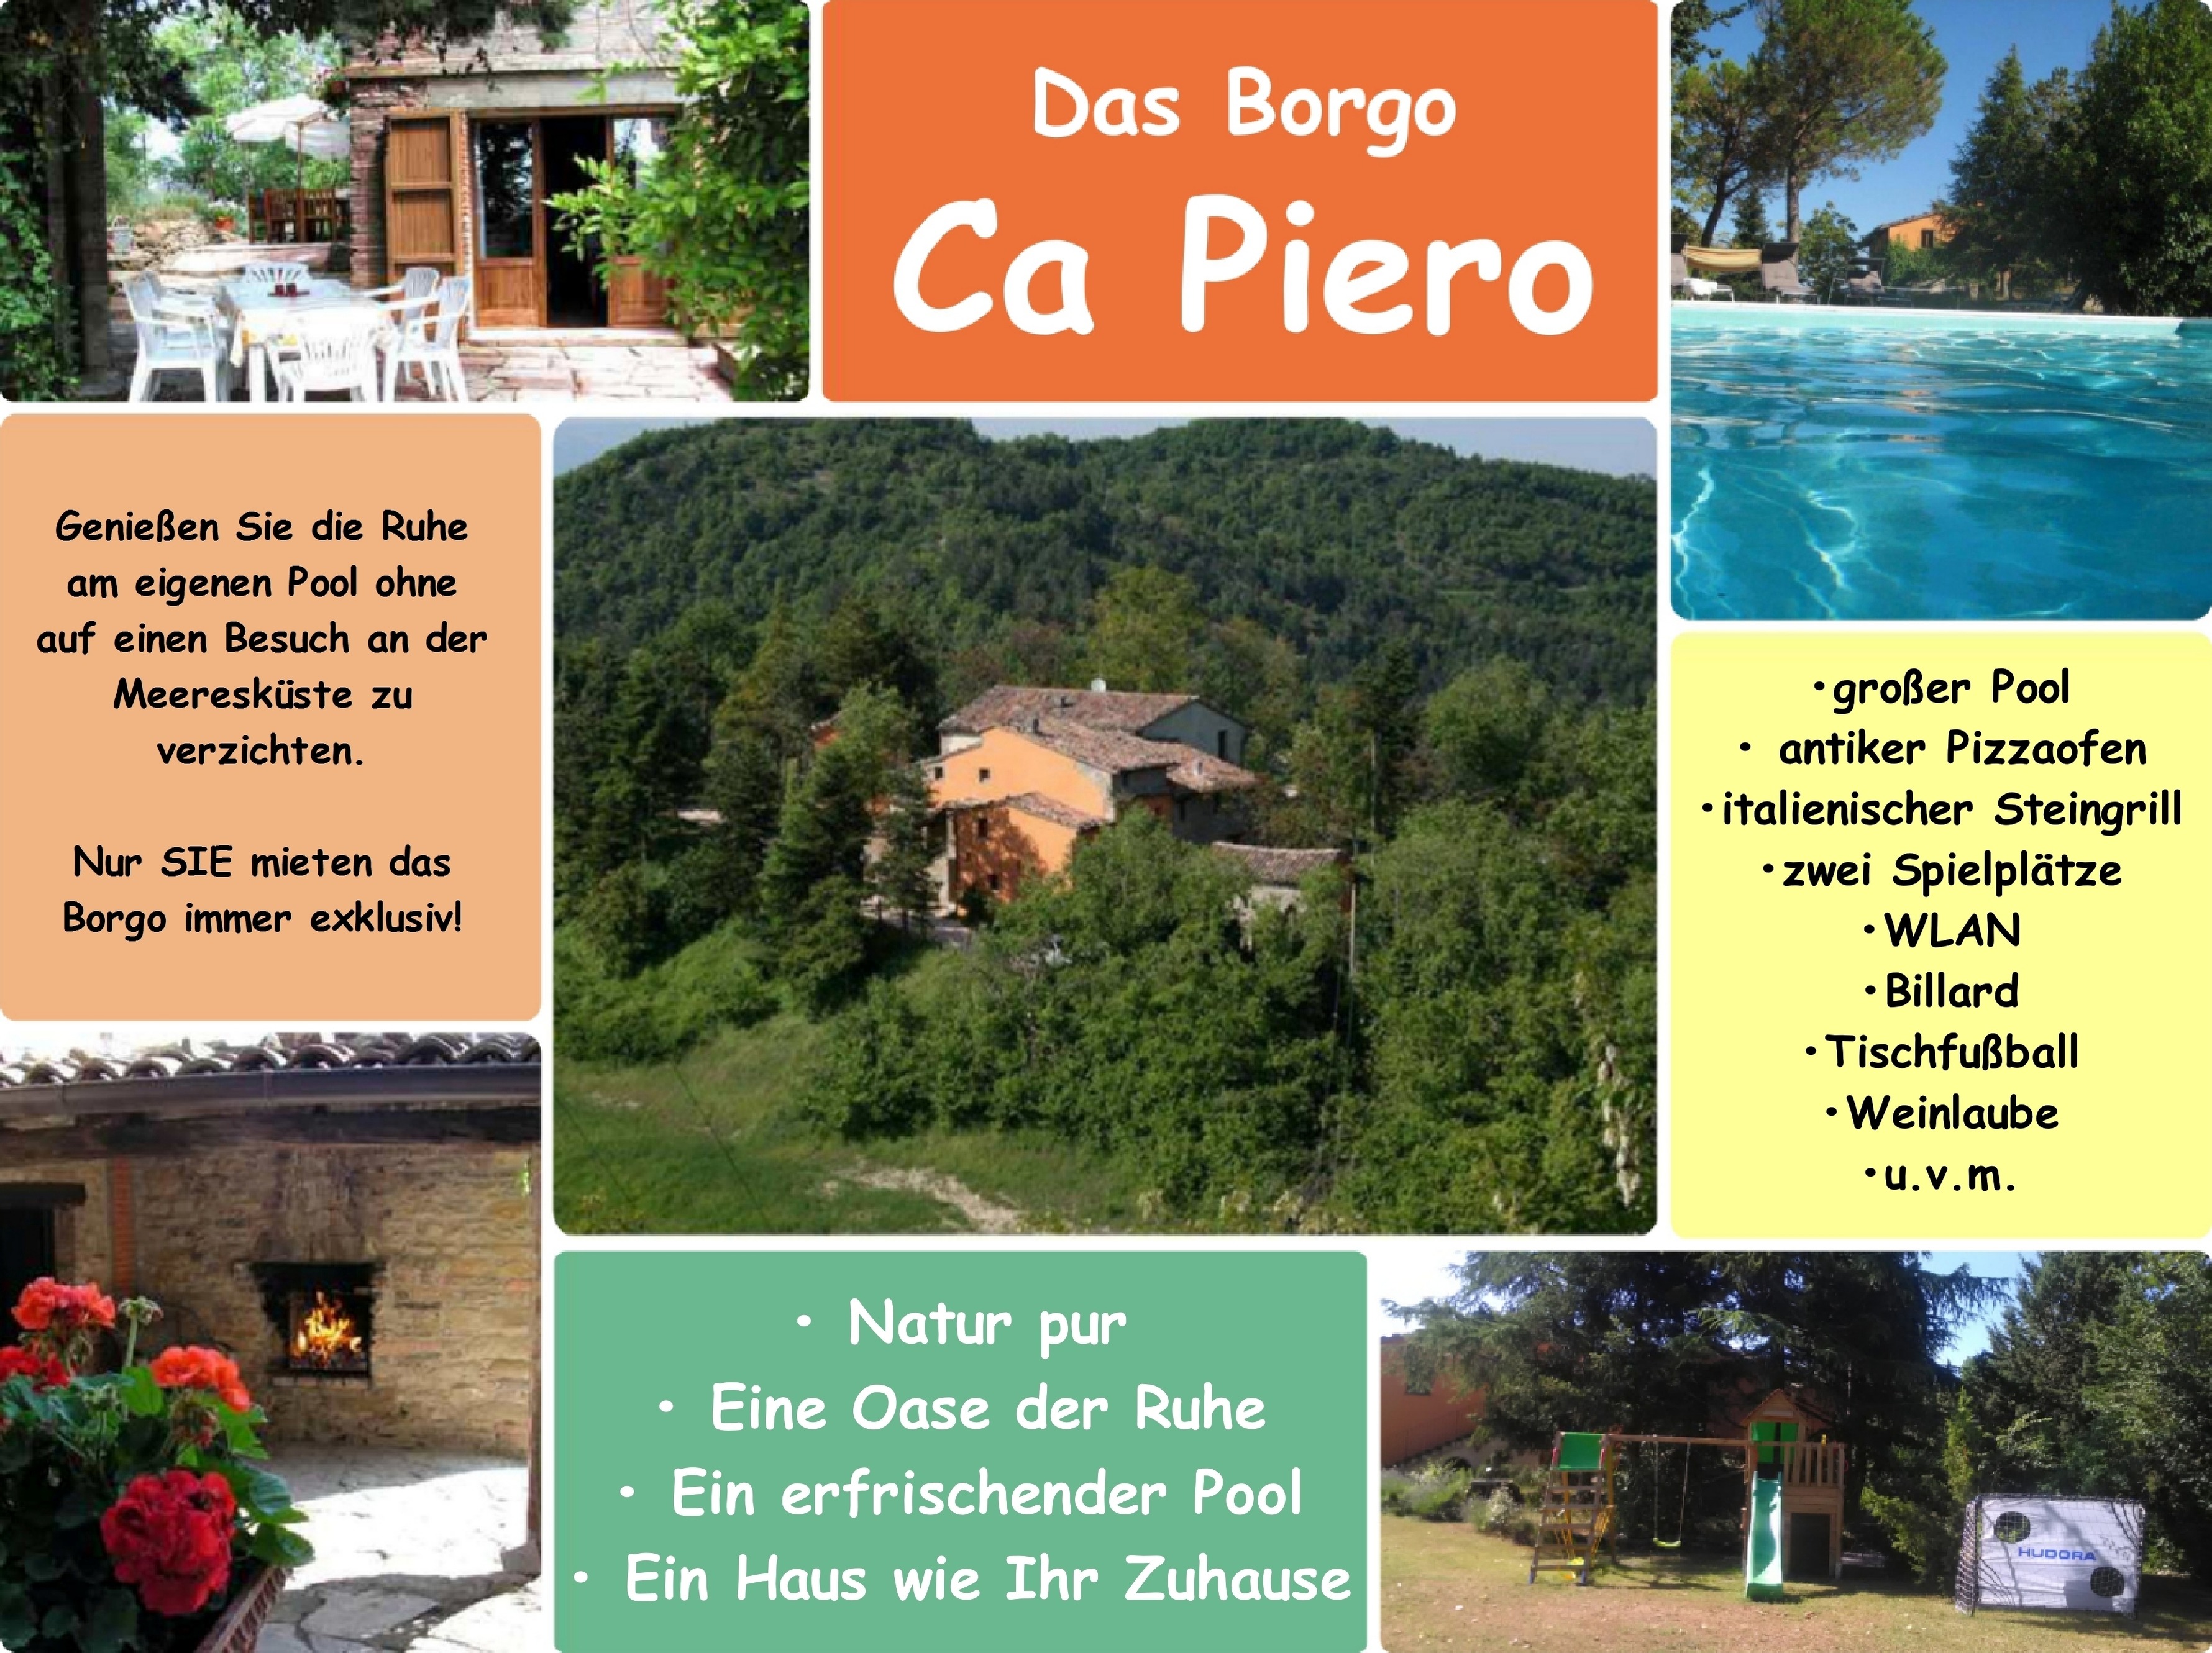 Ferienhaus Ca Piero mit Pool bis 12 Personen Ferienhaus 